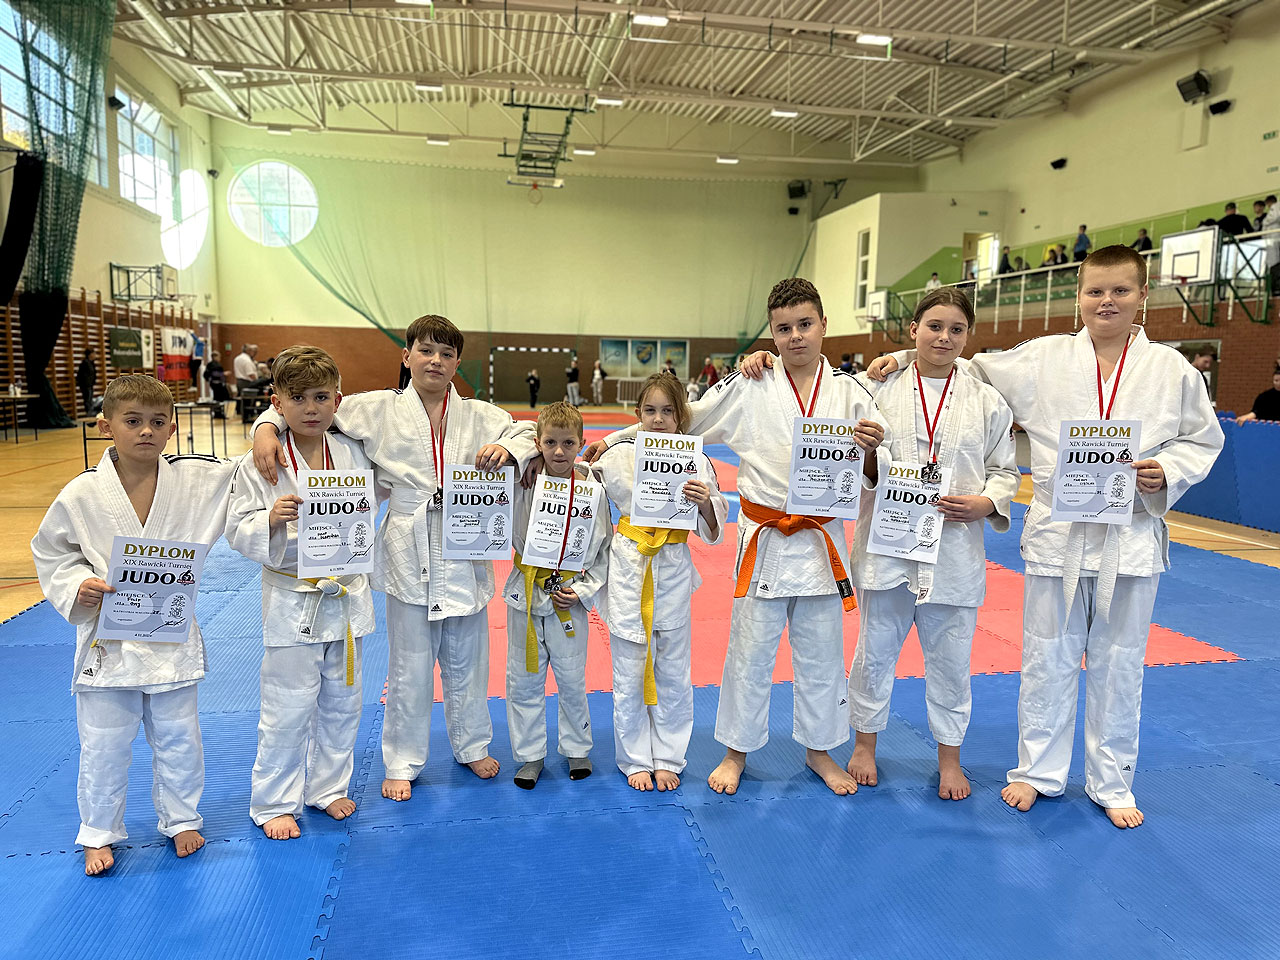 Za nimi weekend na medal! Judocy z Tuliszkowa na podium w dwóch turniejach - fot.: UKS Judo Tuliszków